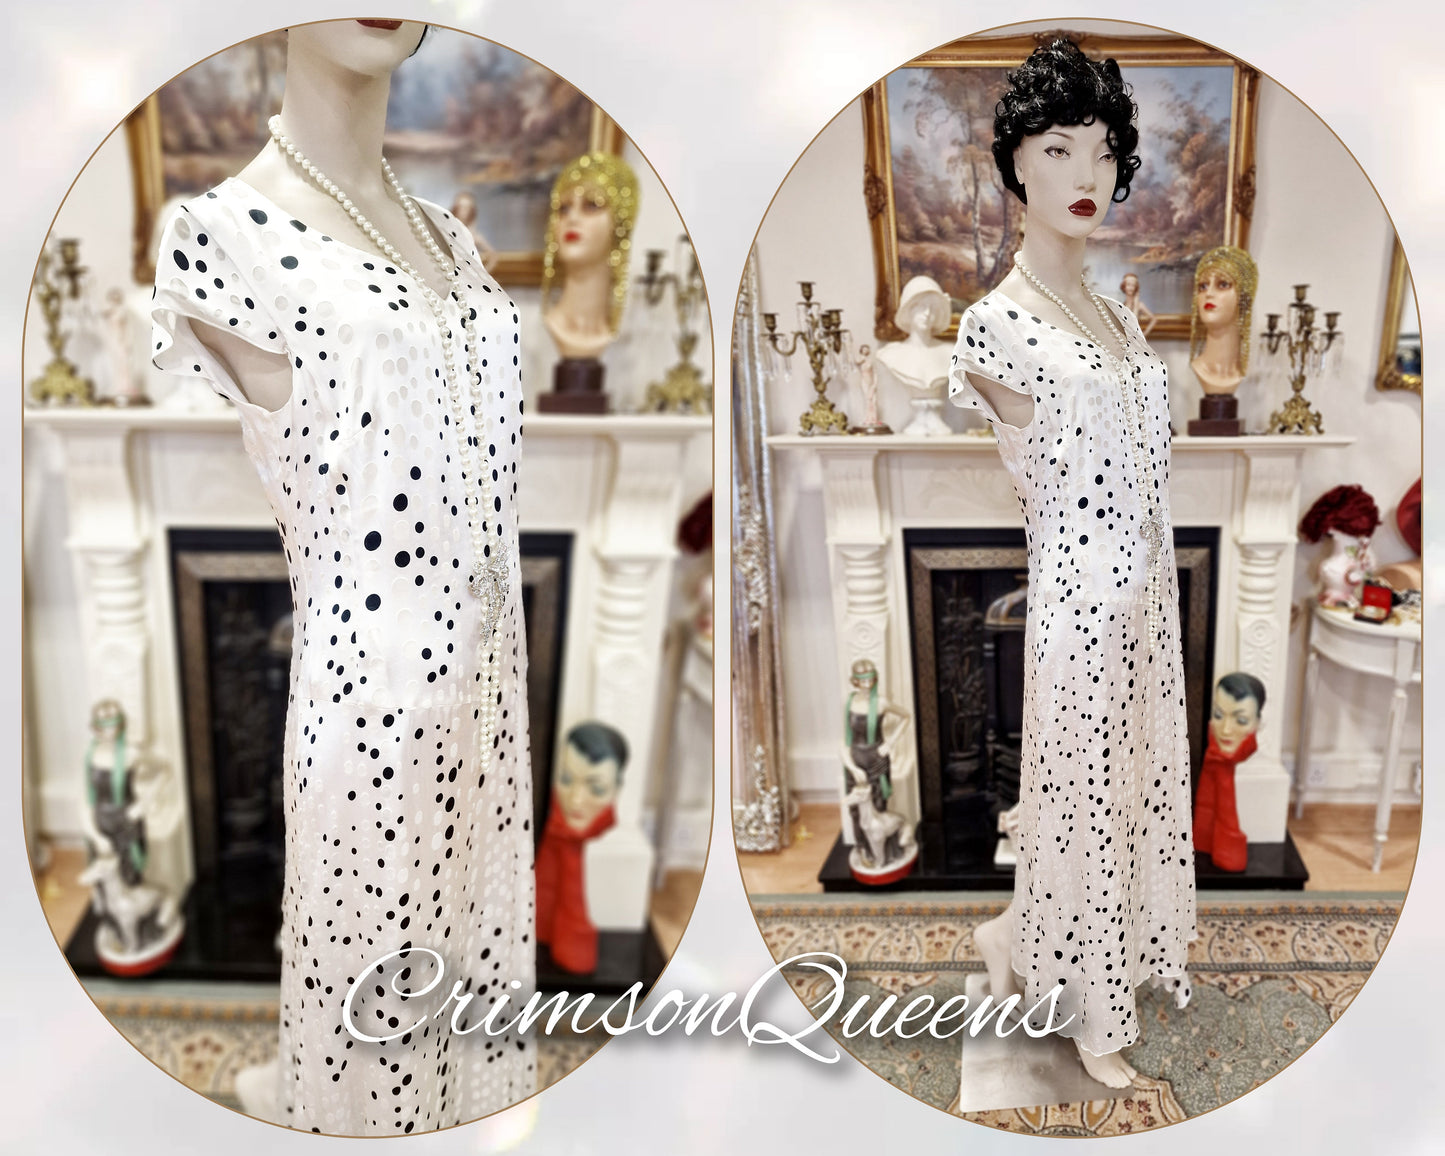 1930s  Vintage Downton Abbey dress Avant Garde 100% silk Devore bias cut  polka-dot spotty black and white monochrome dress size UK 12  US 8